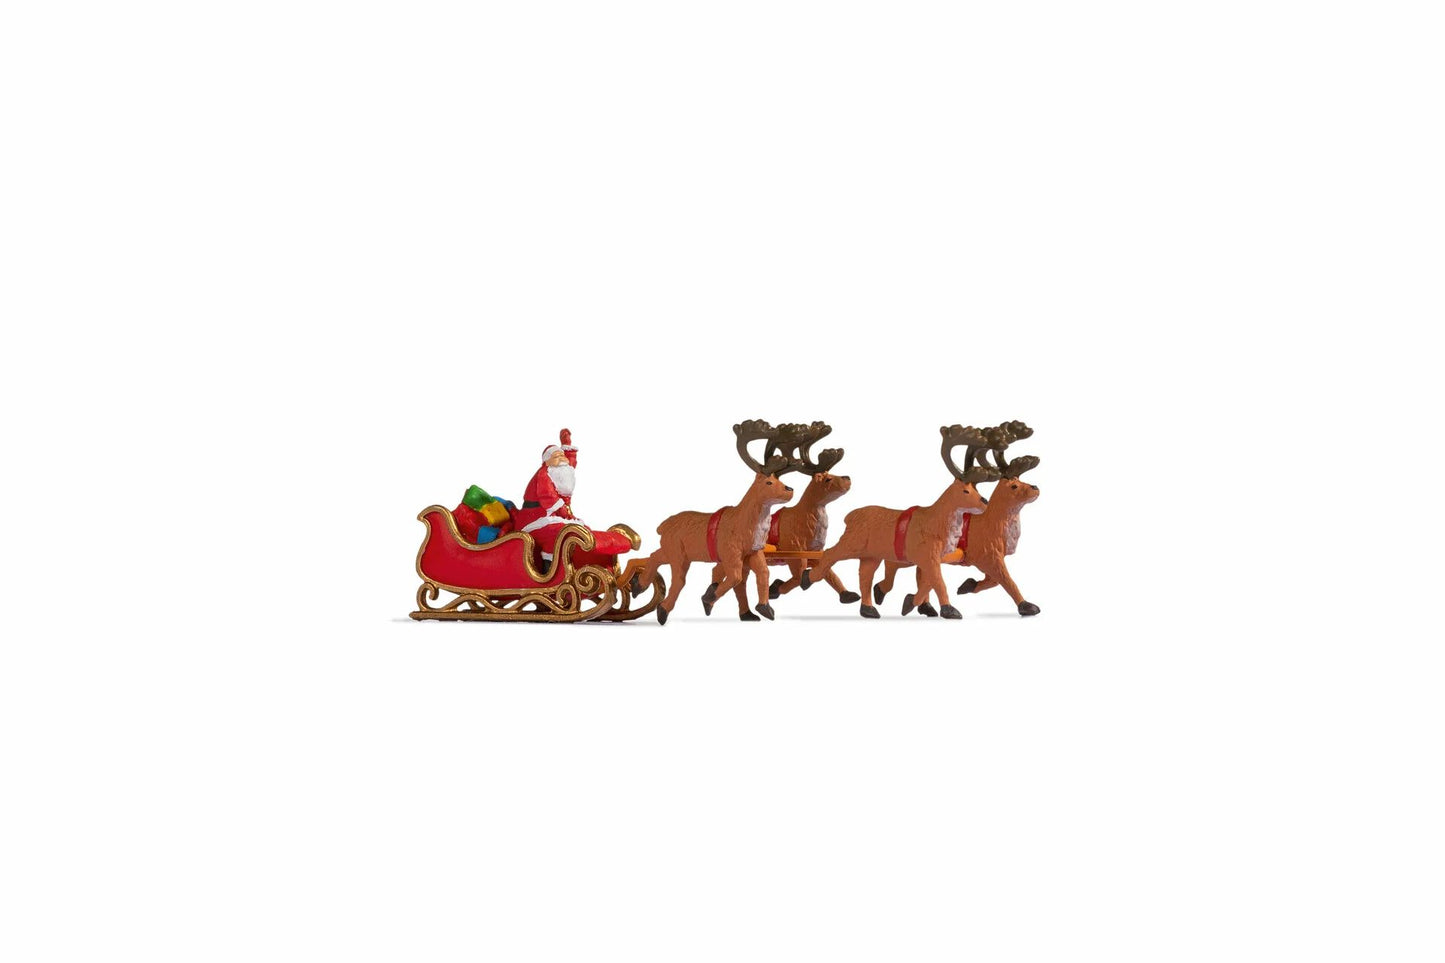 Noch 15924 Santa Claus With Reindeer Hauled Sleigh Figure Set HO Gauge